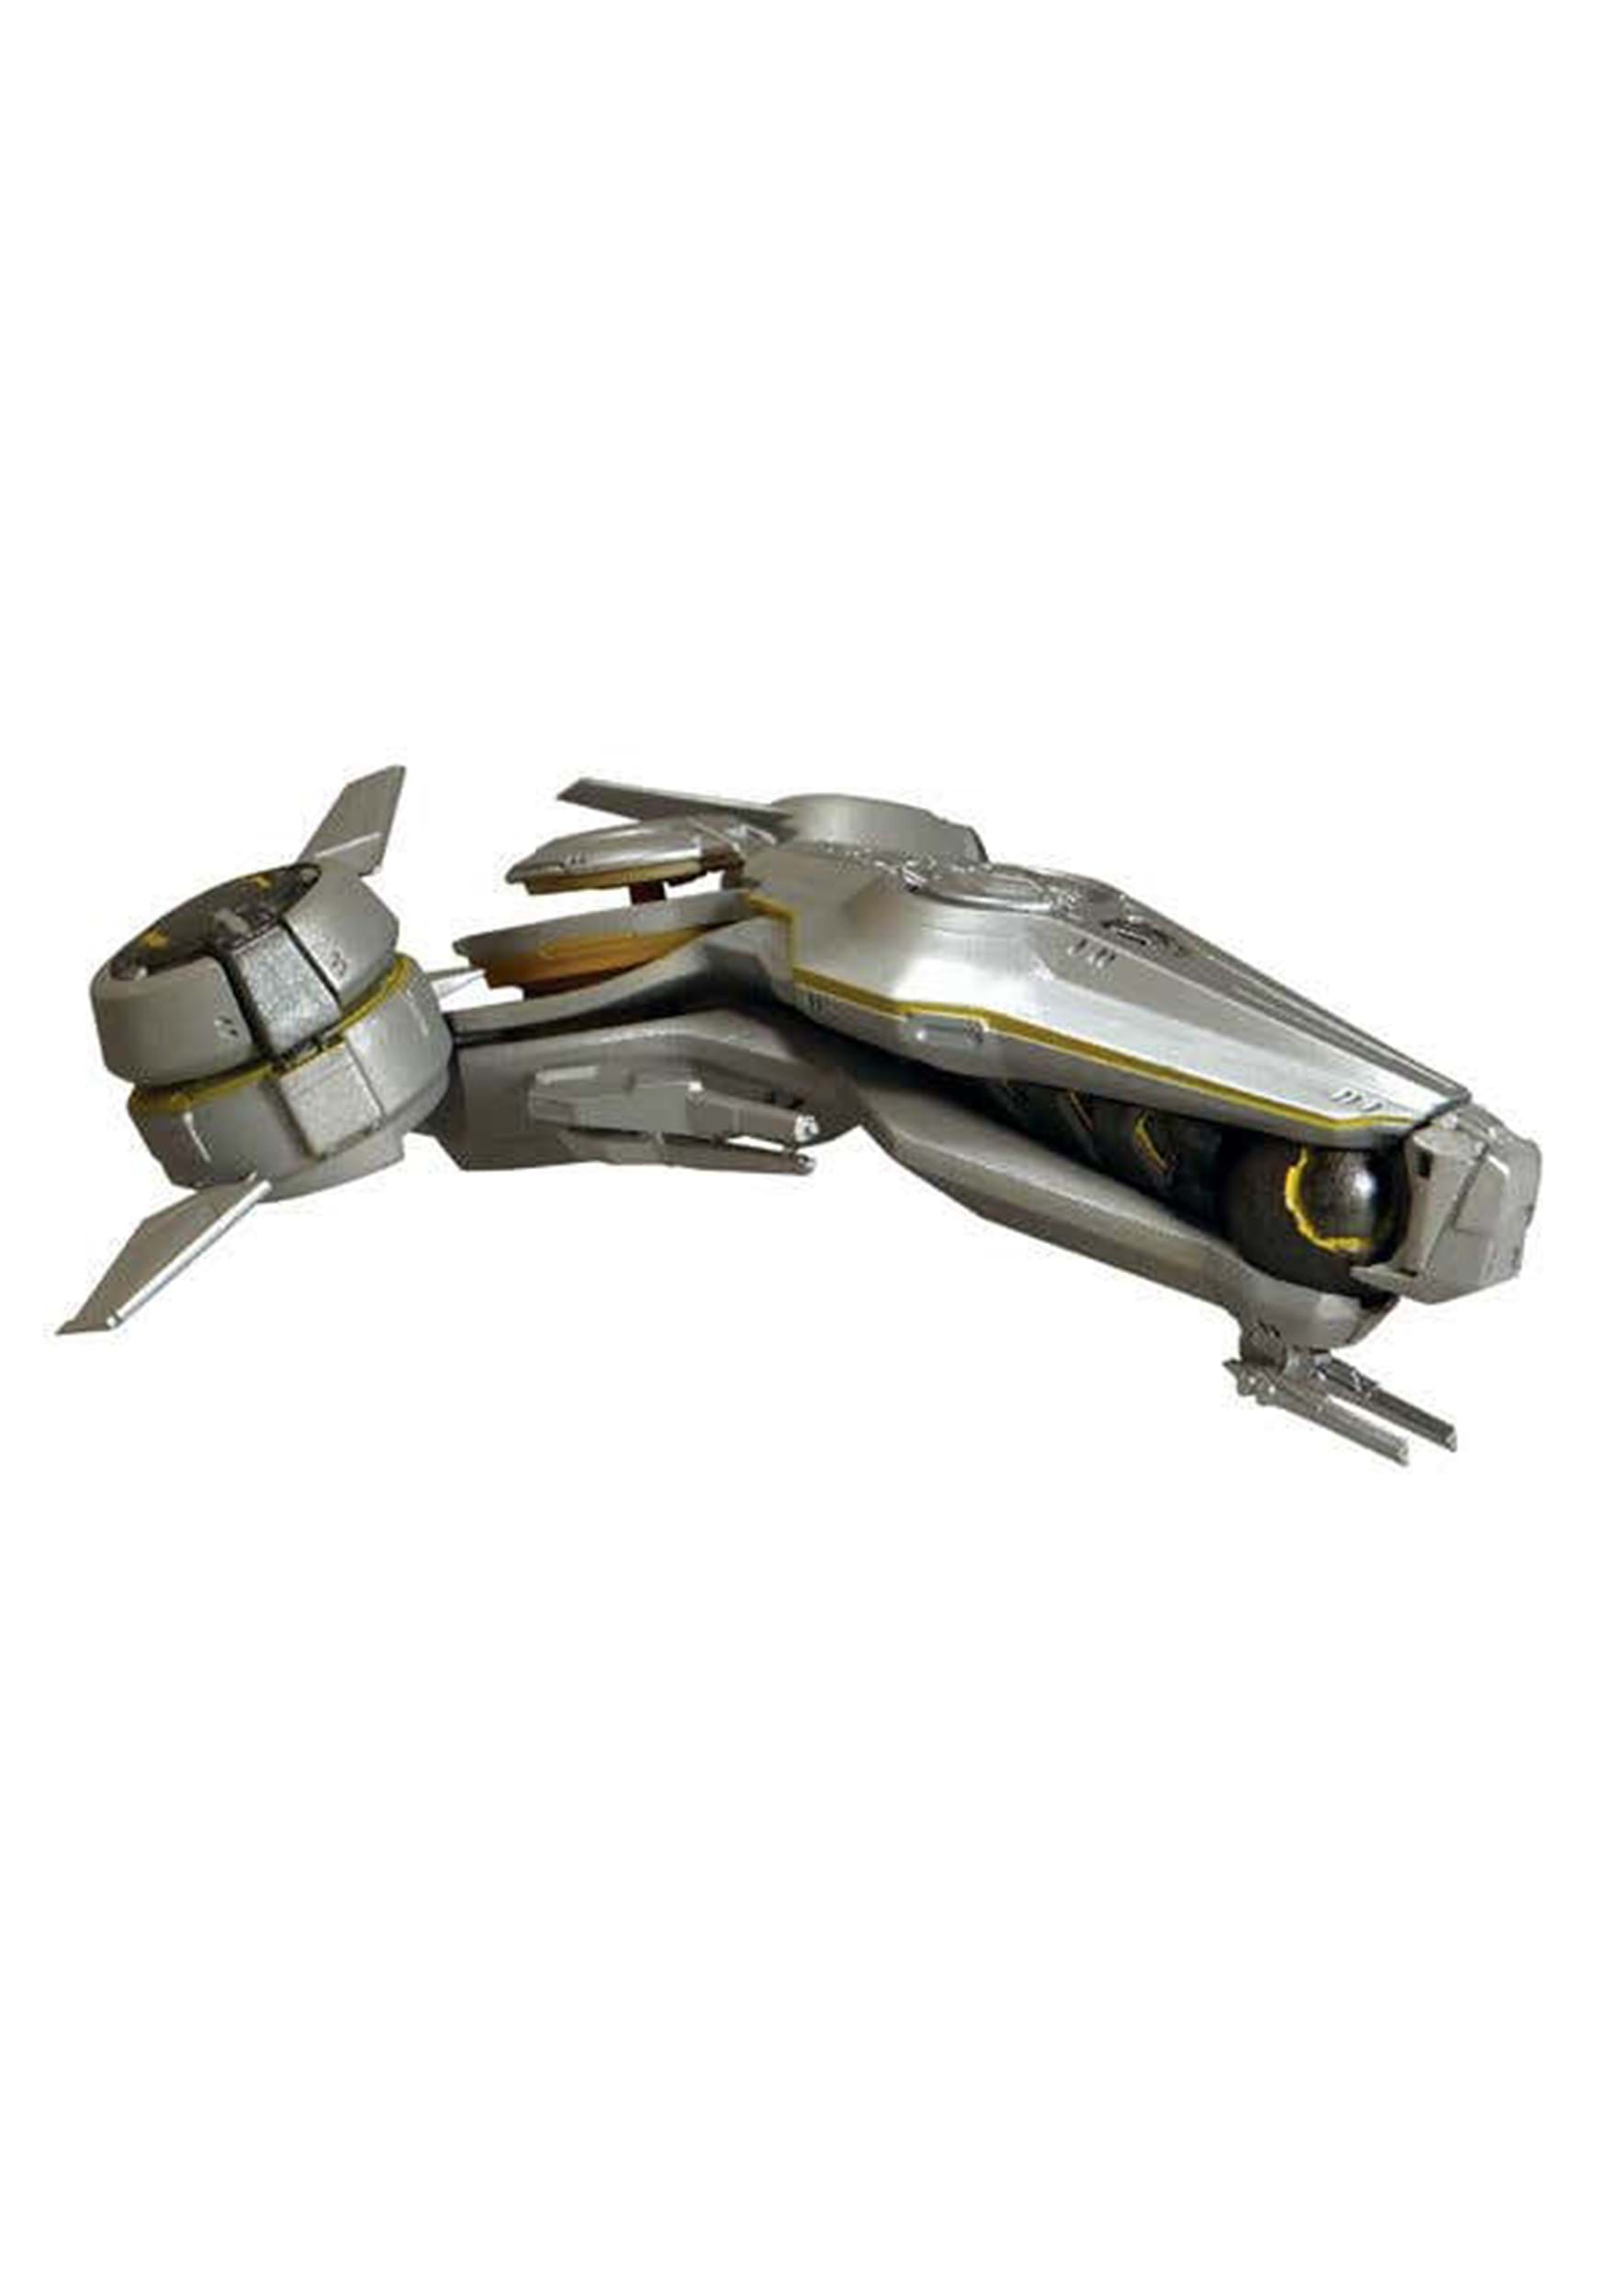 Halo 5 Forerunner Phaeton Ship Replica Collectible